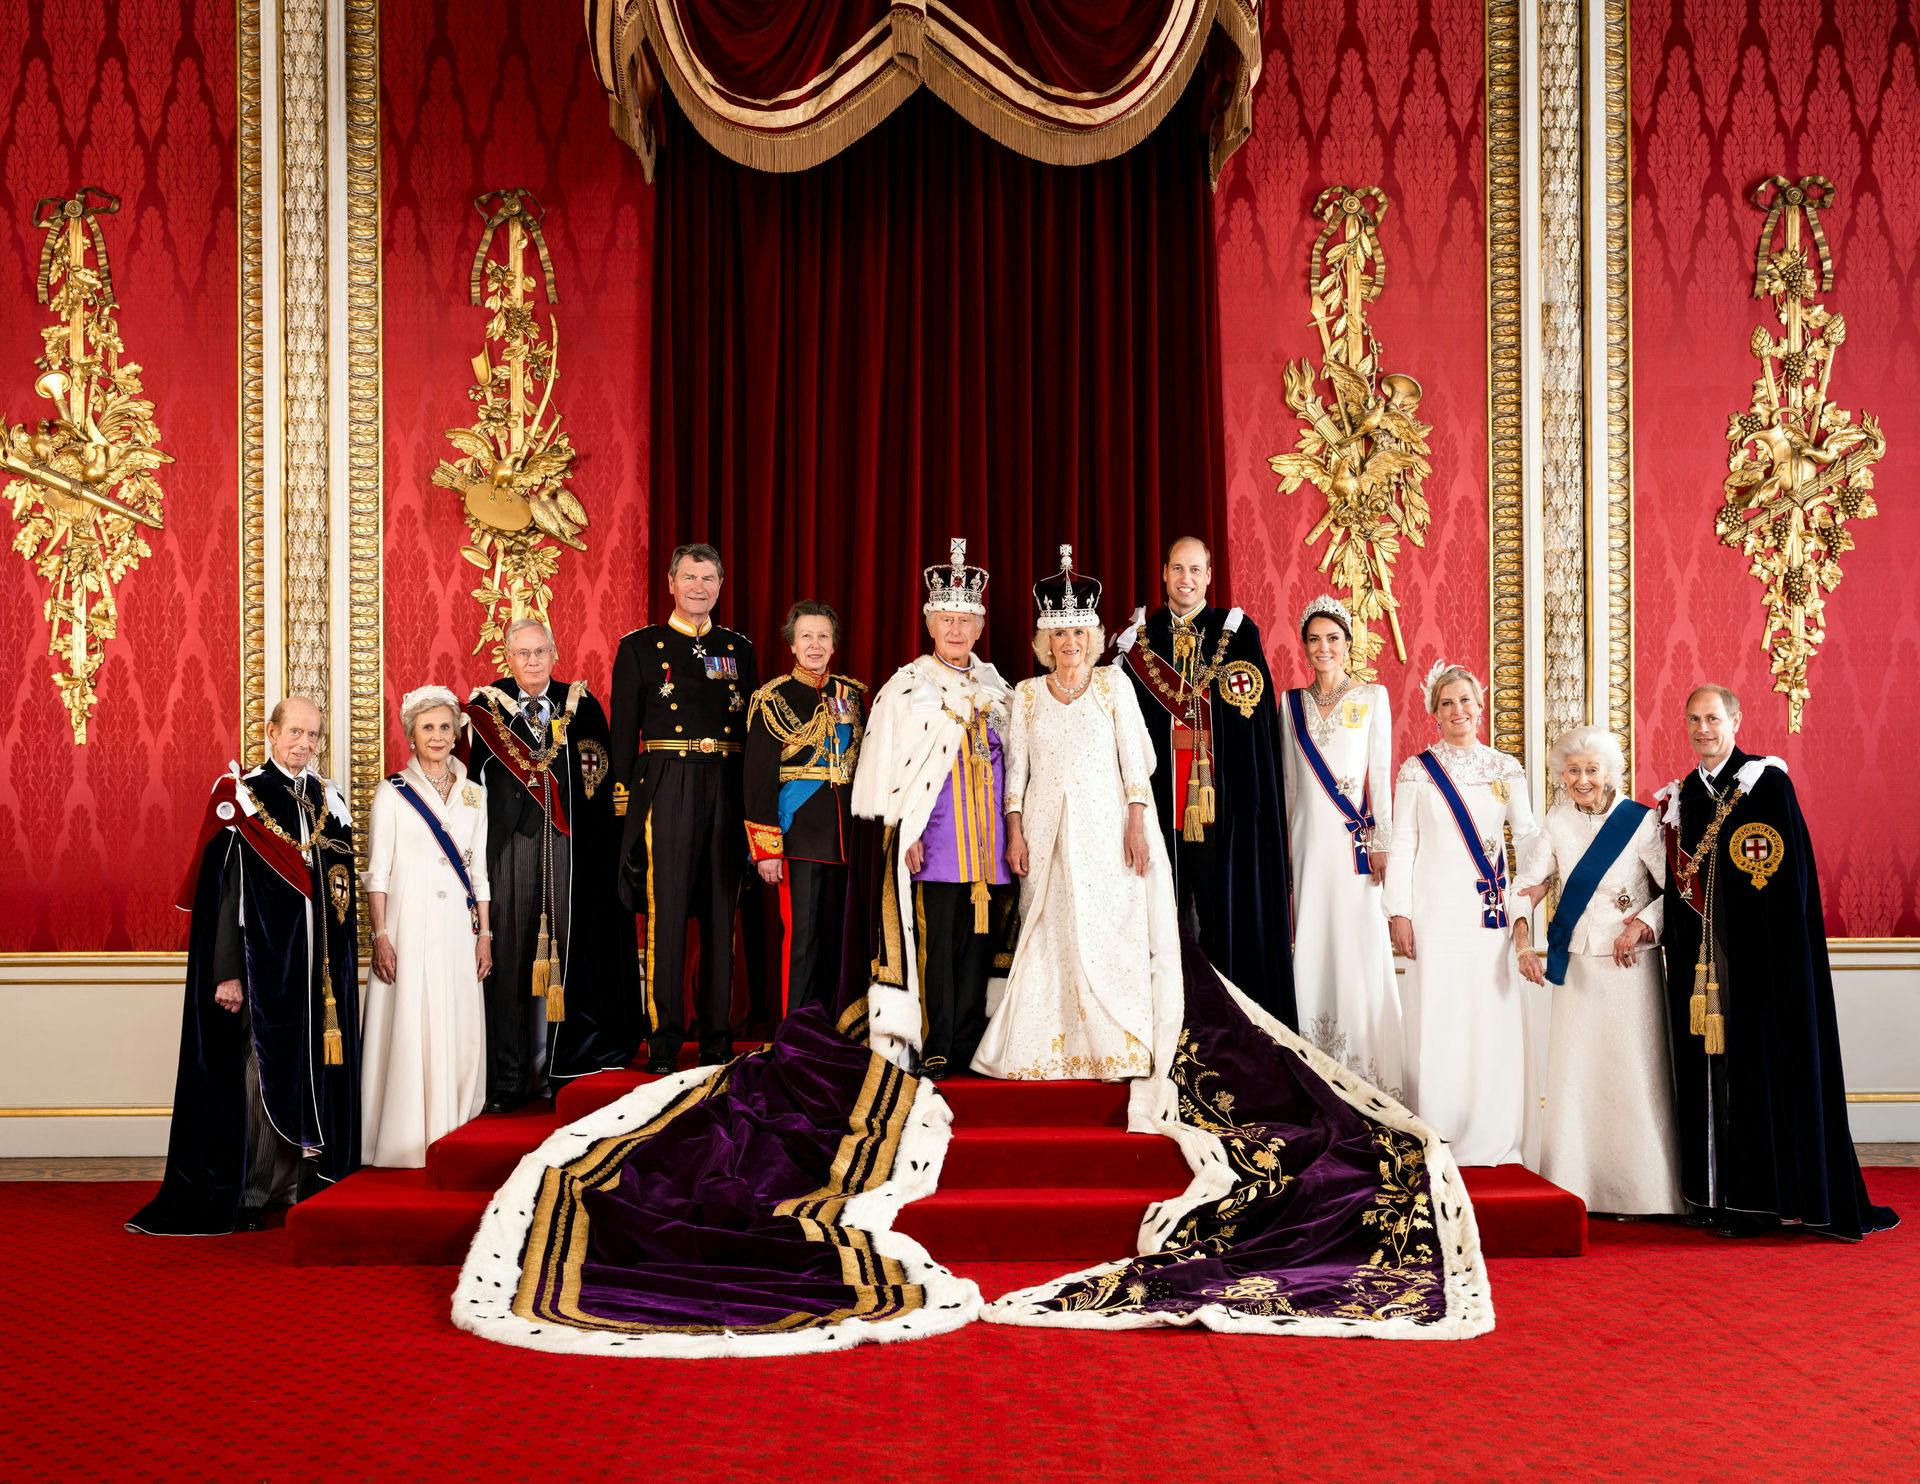 De officielle billeder af kong Charles' kroning.&nbsp;
